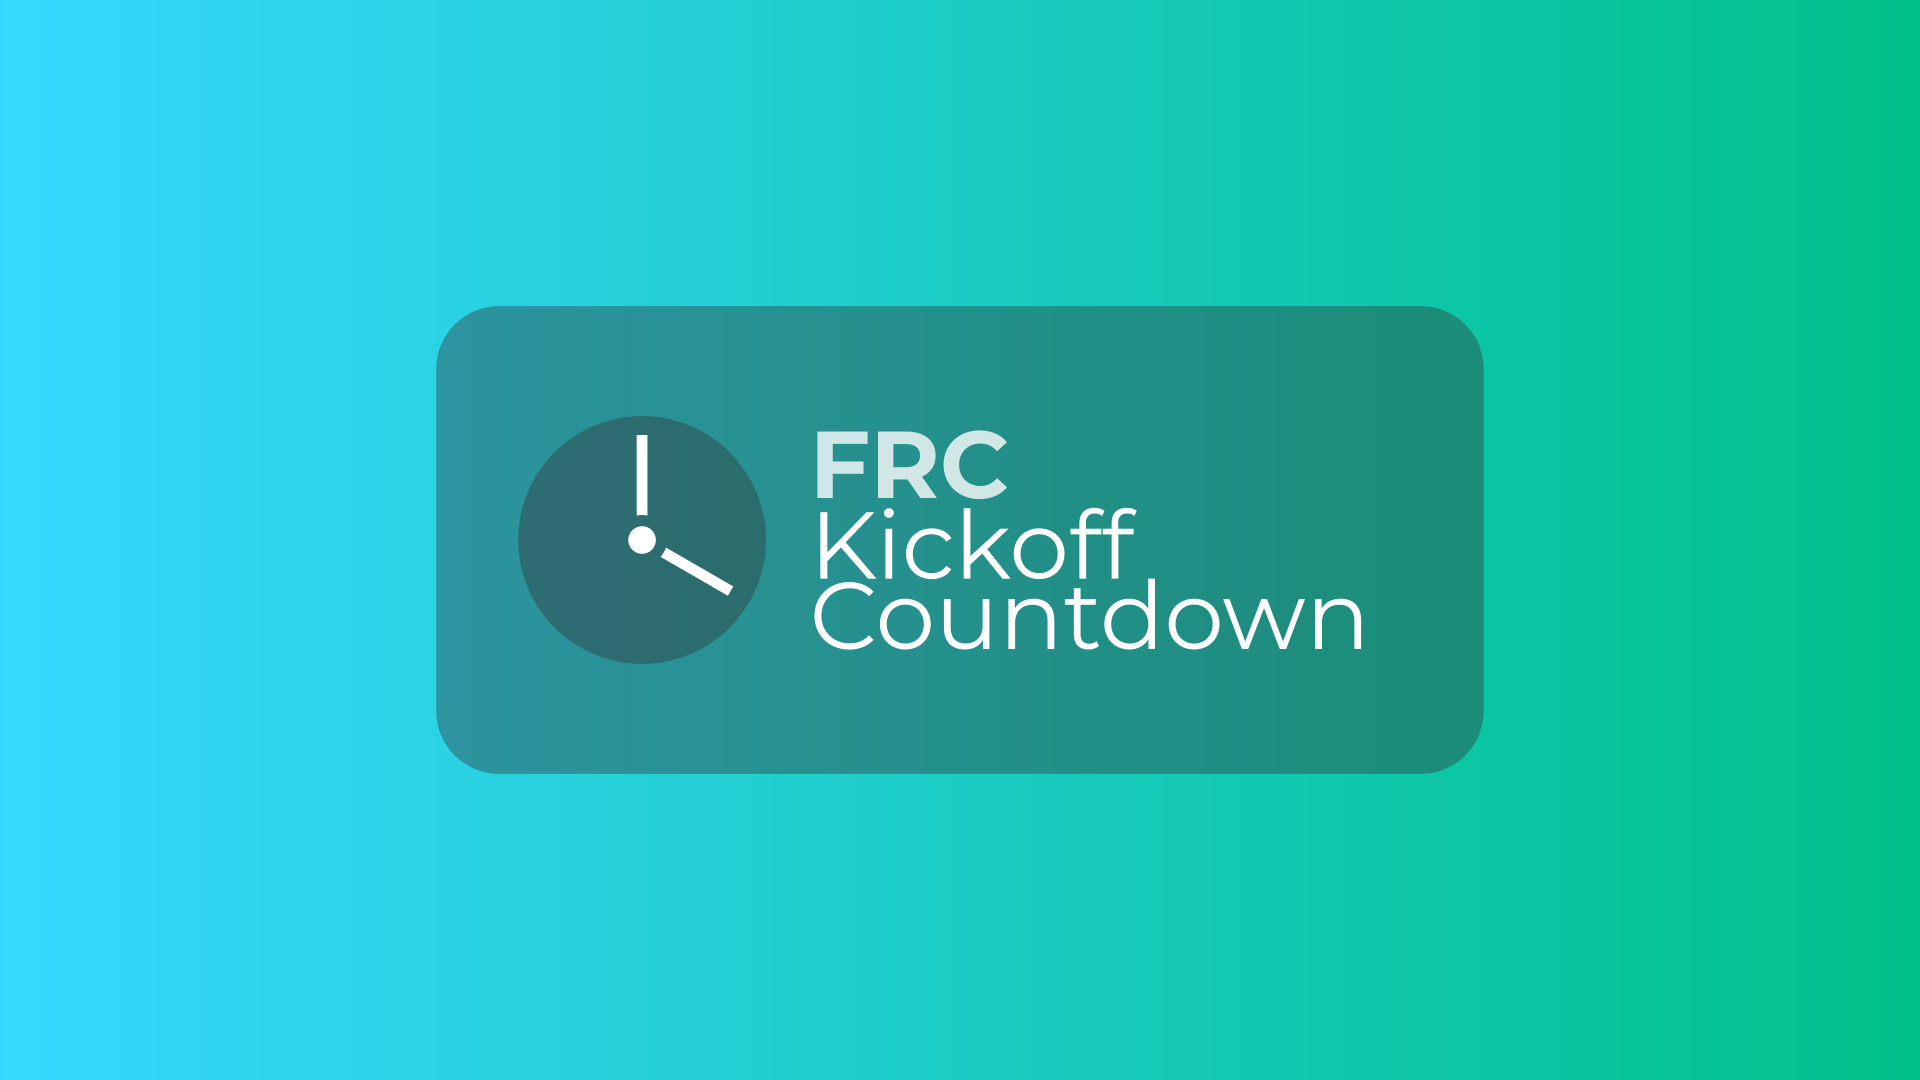 FRC Kickoff Countdown